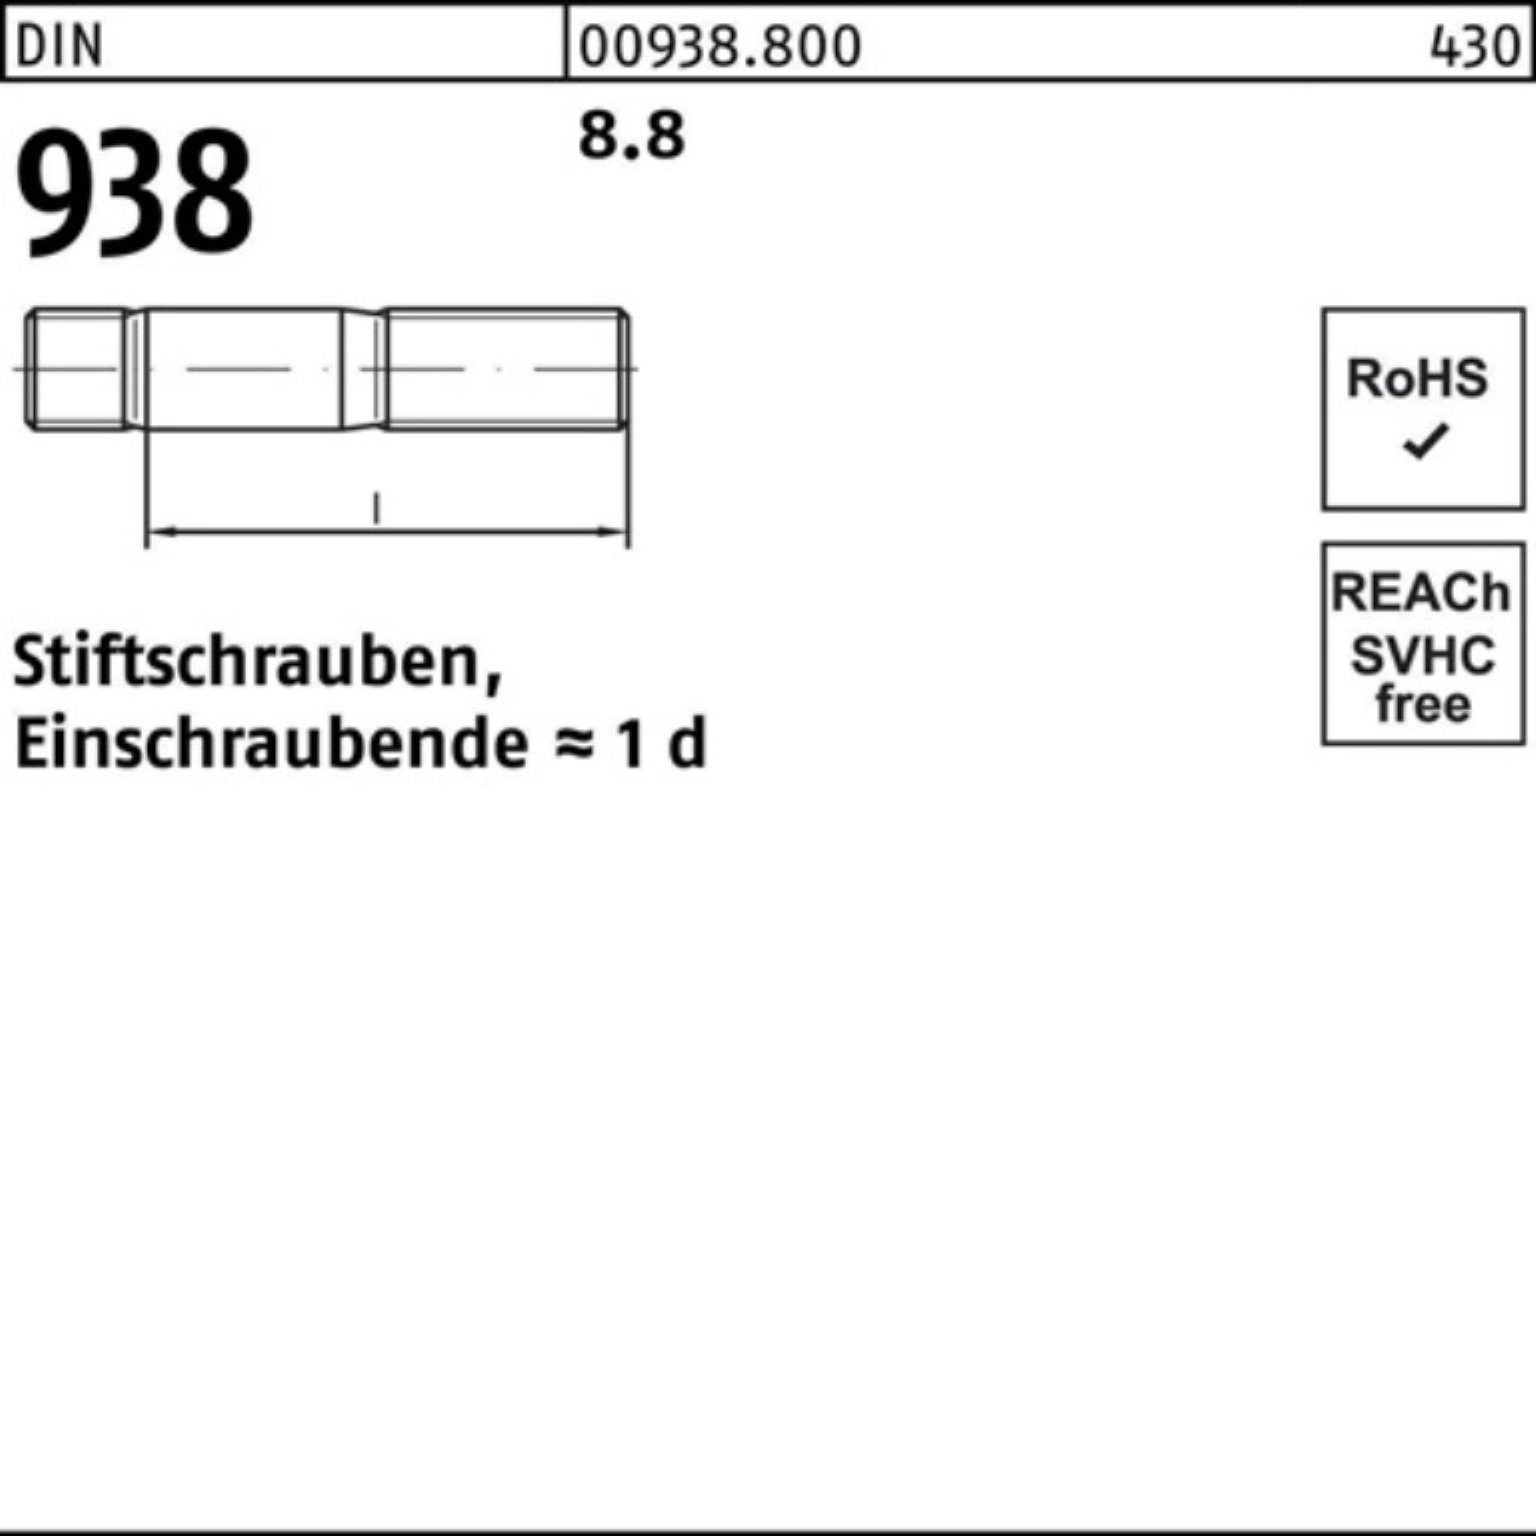 Sti M20x 80 DIN 100er Pack 8.8 Stück Stiftschraube 938 DIN 8.8 938 10 Stiftschraube Reyher